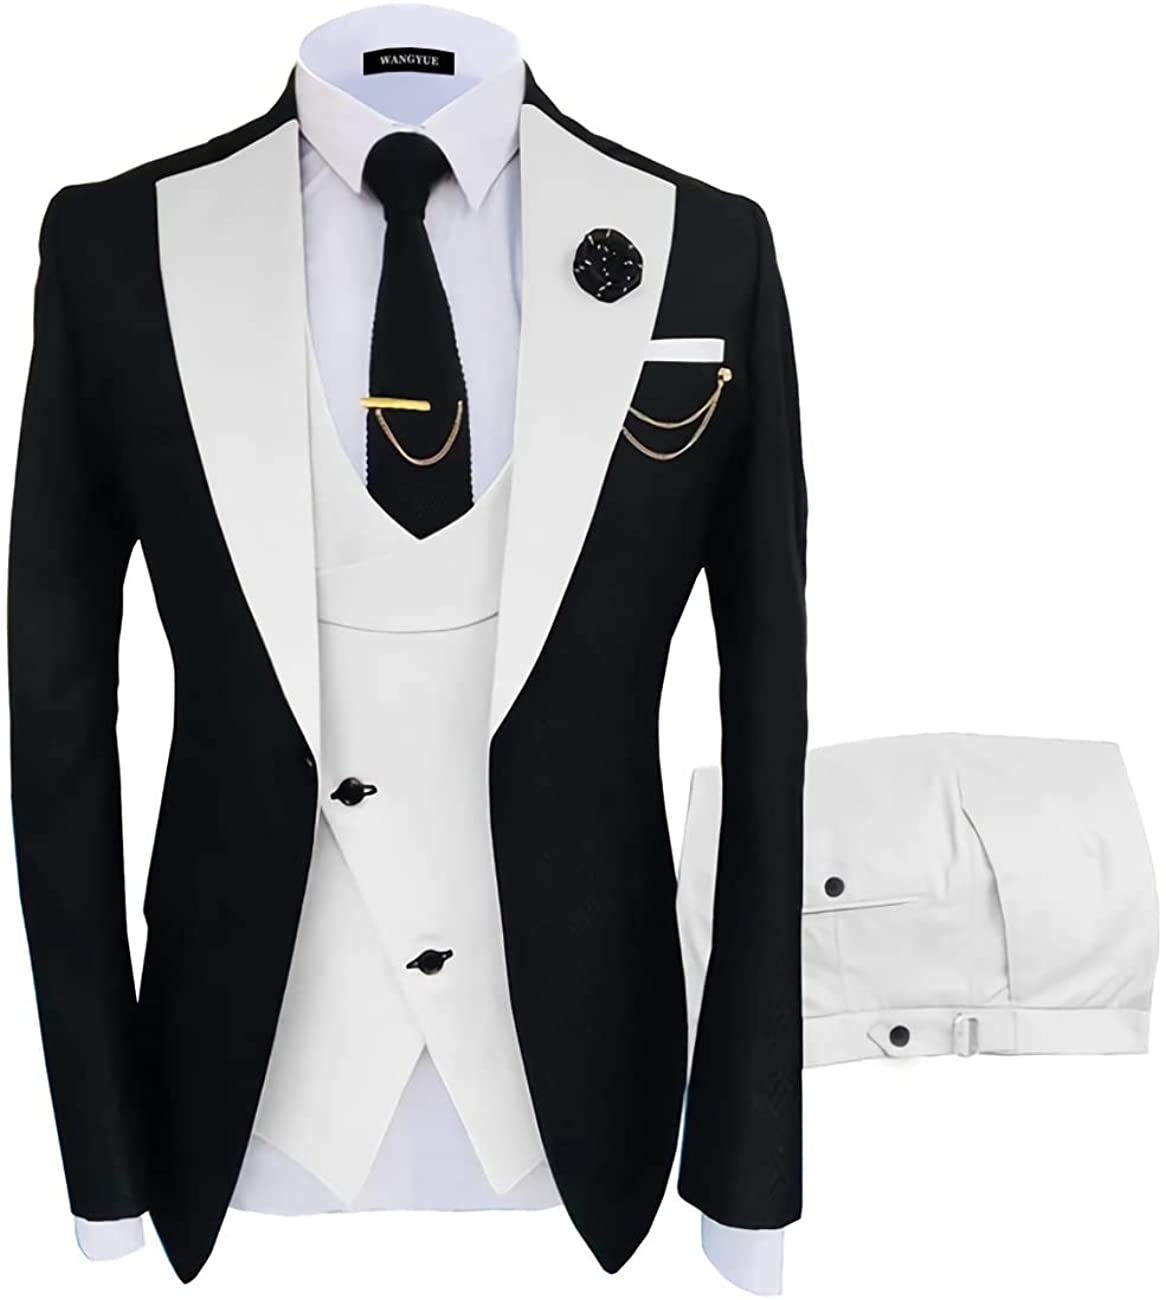 Wangyue 3 Piece Men's Suits,Suit,Suit Slim Fit,Tuxedo for Men